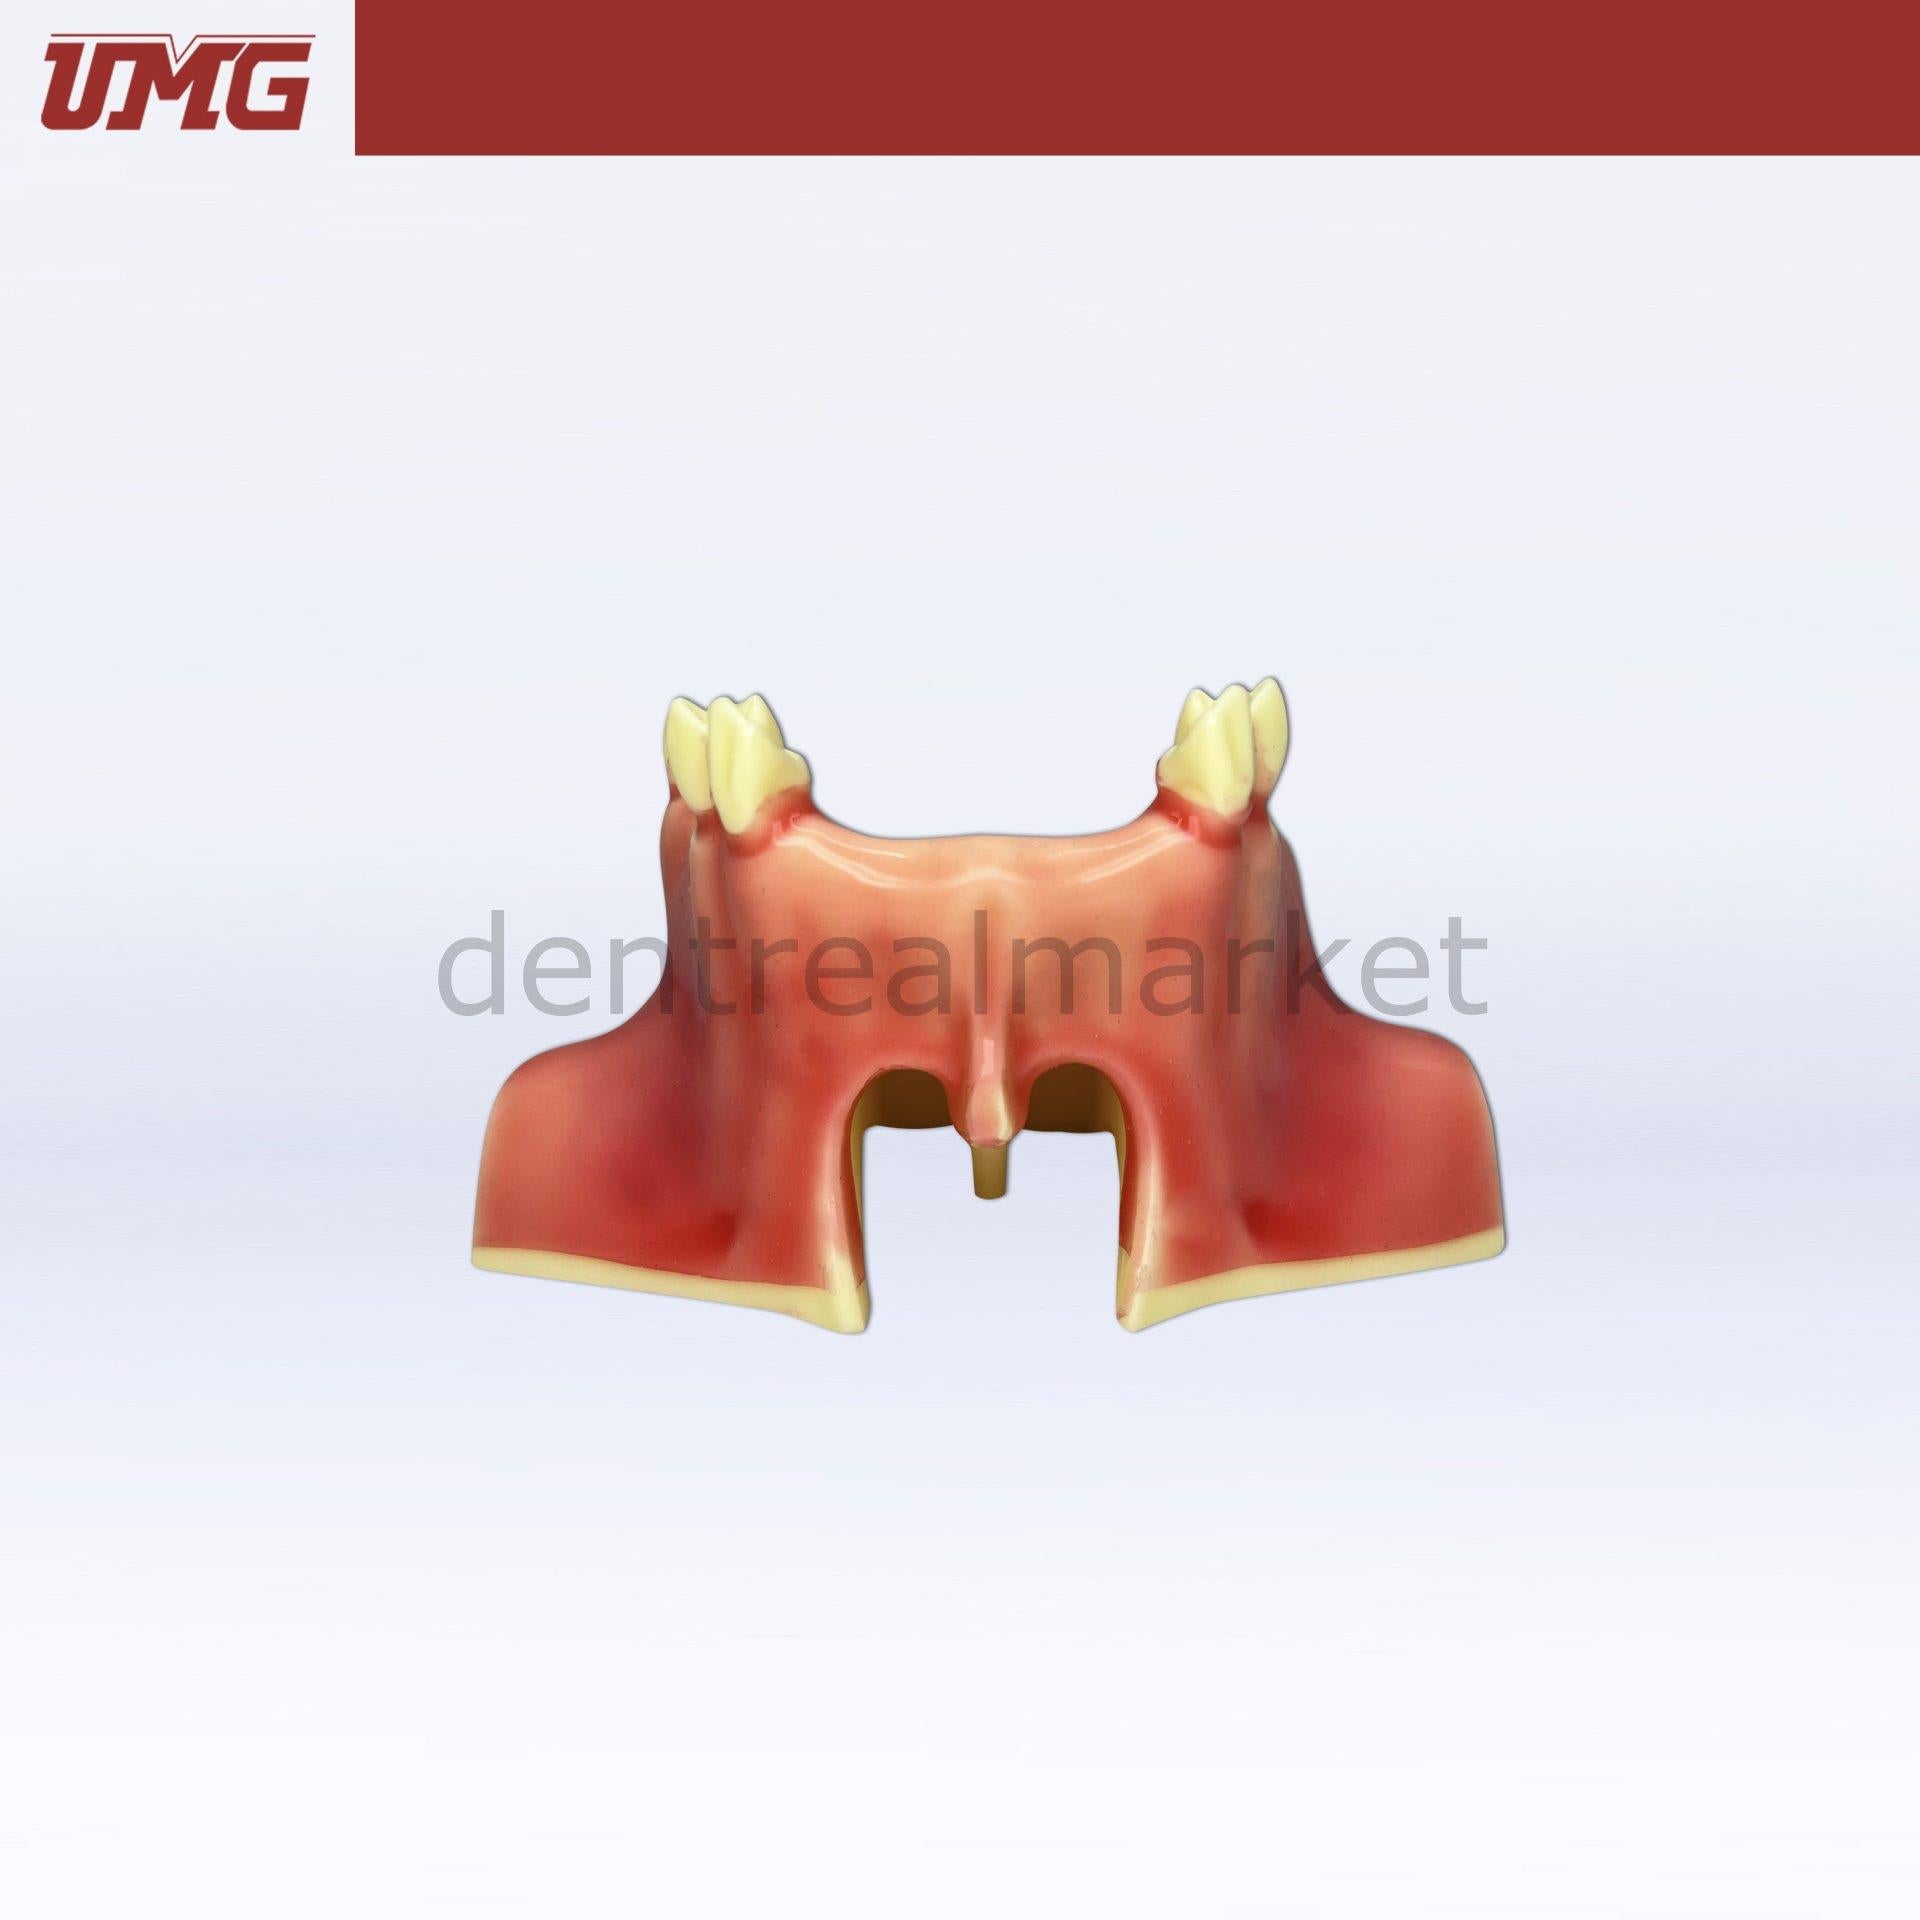 DentrealStore - Umg Dental Umg Model Sine Lift Training Model - UM-2012